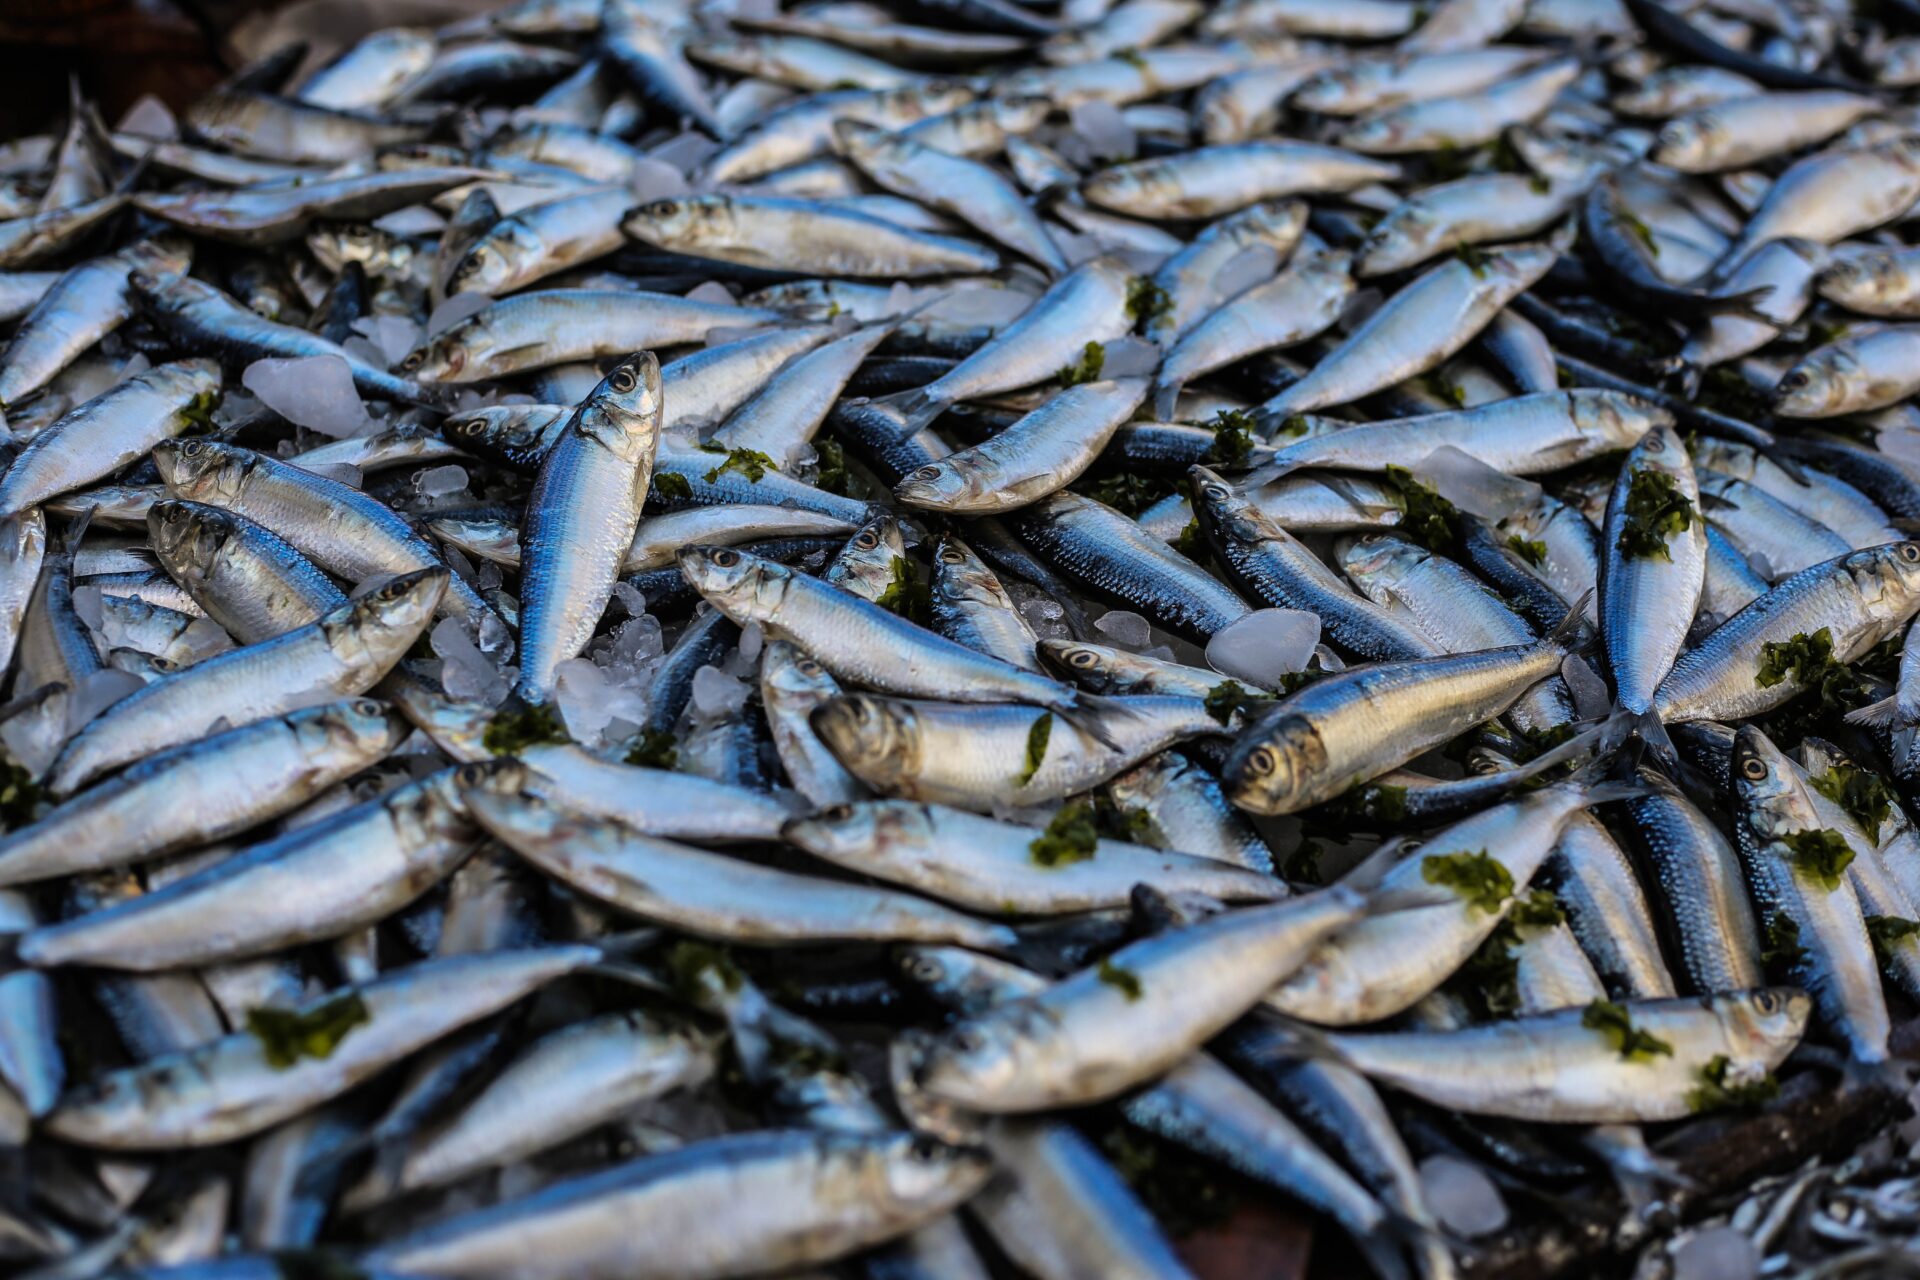 Śnięte ryby w Berlinie? Zdjęcie w fałszywym kontekście